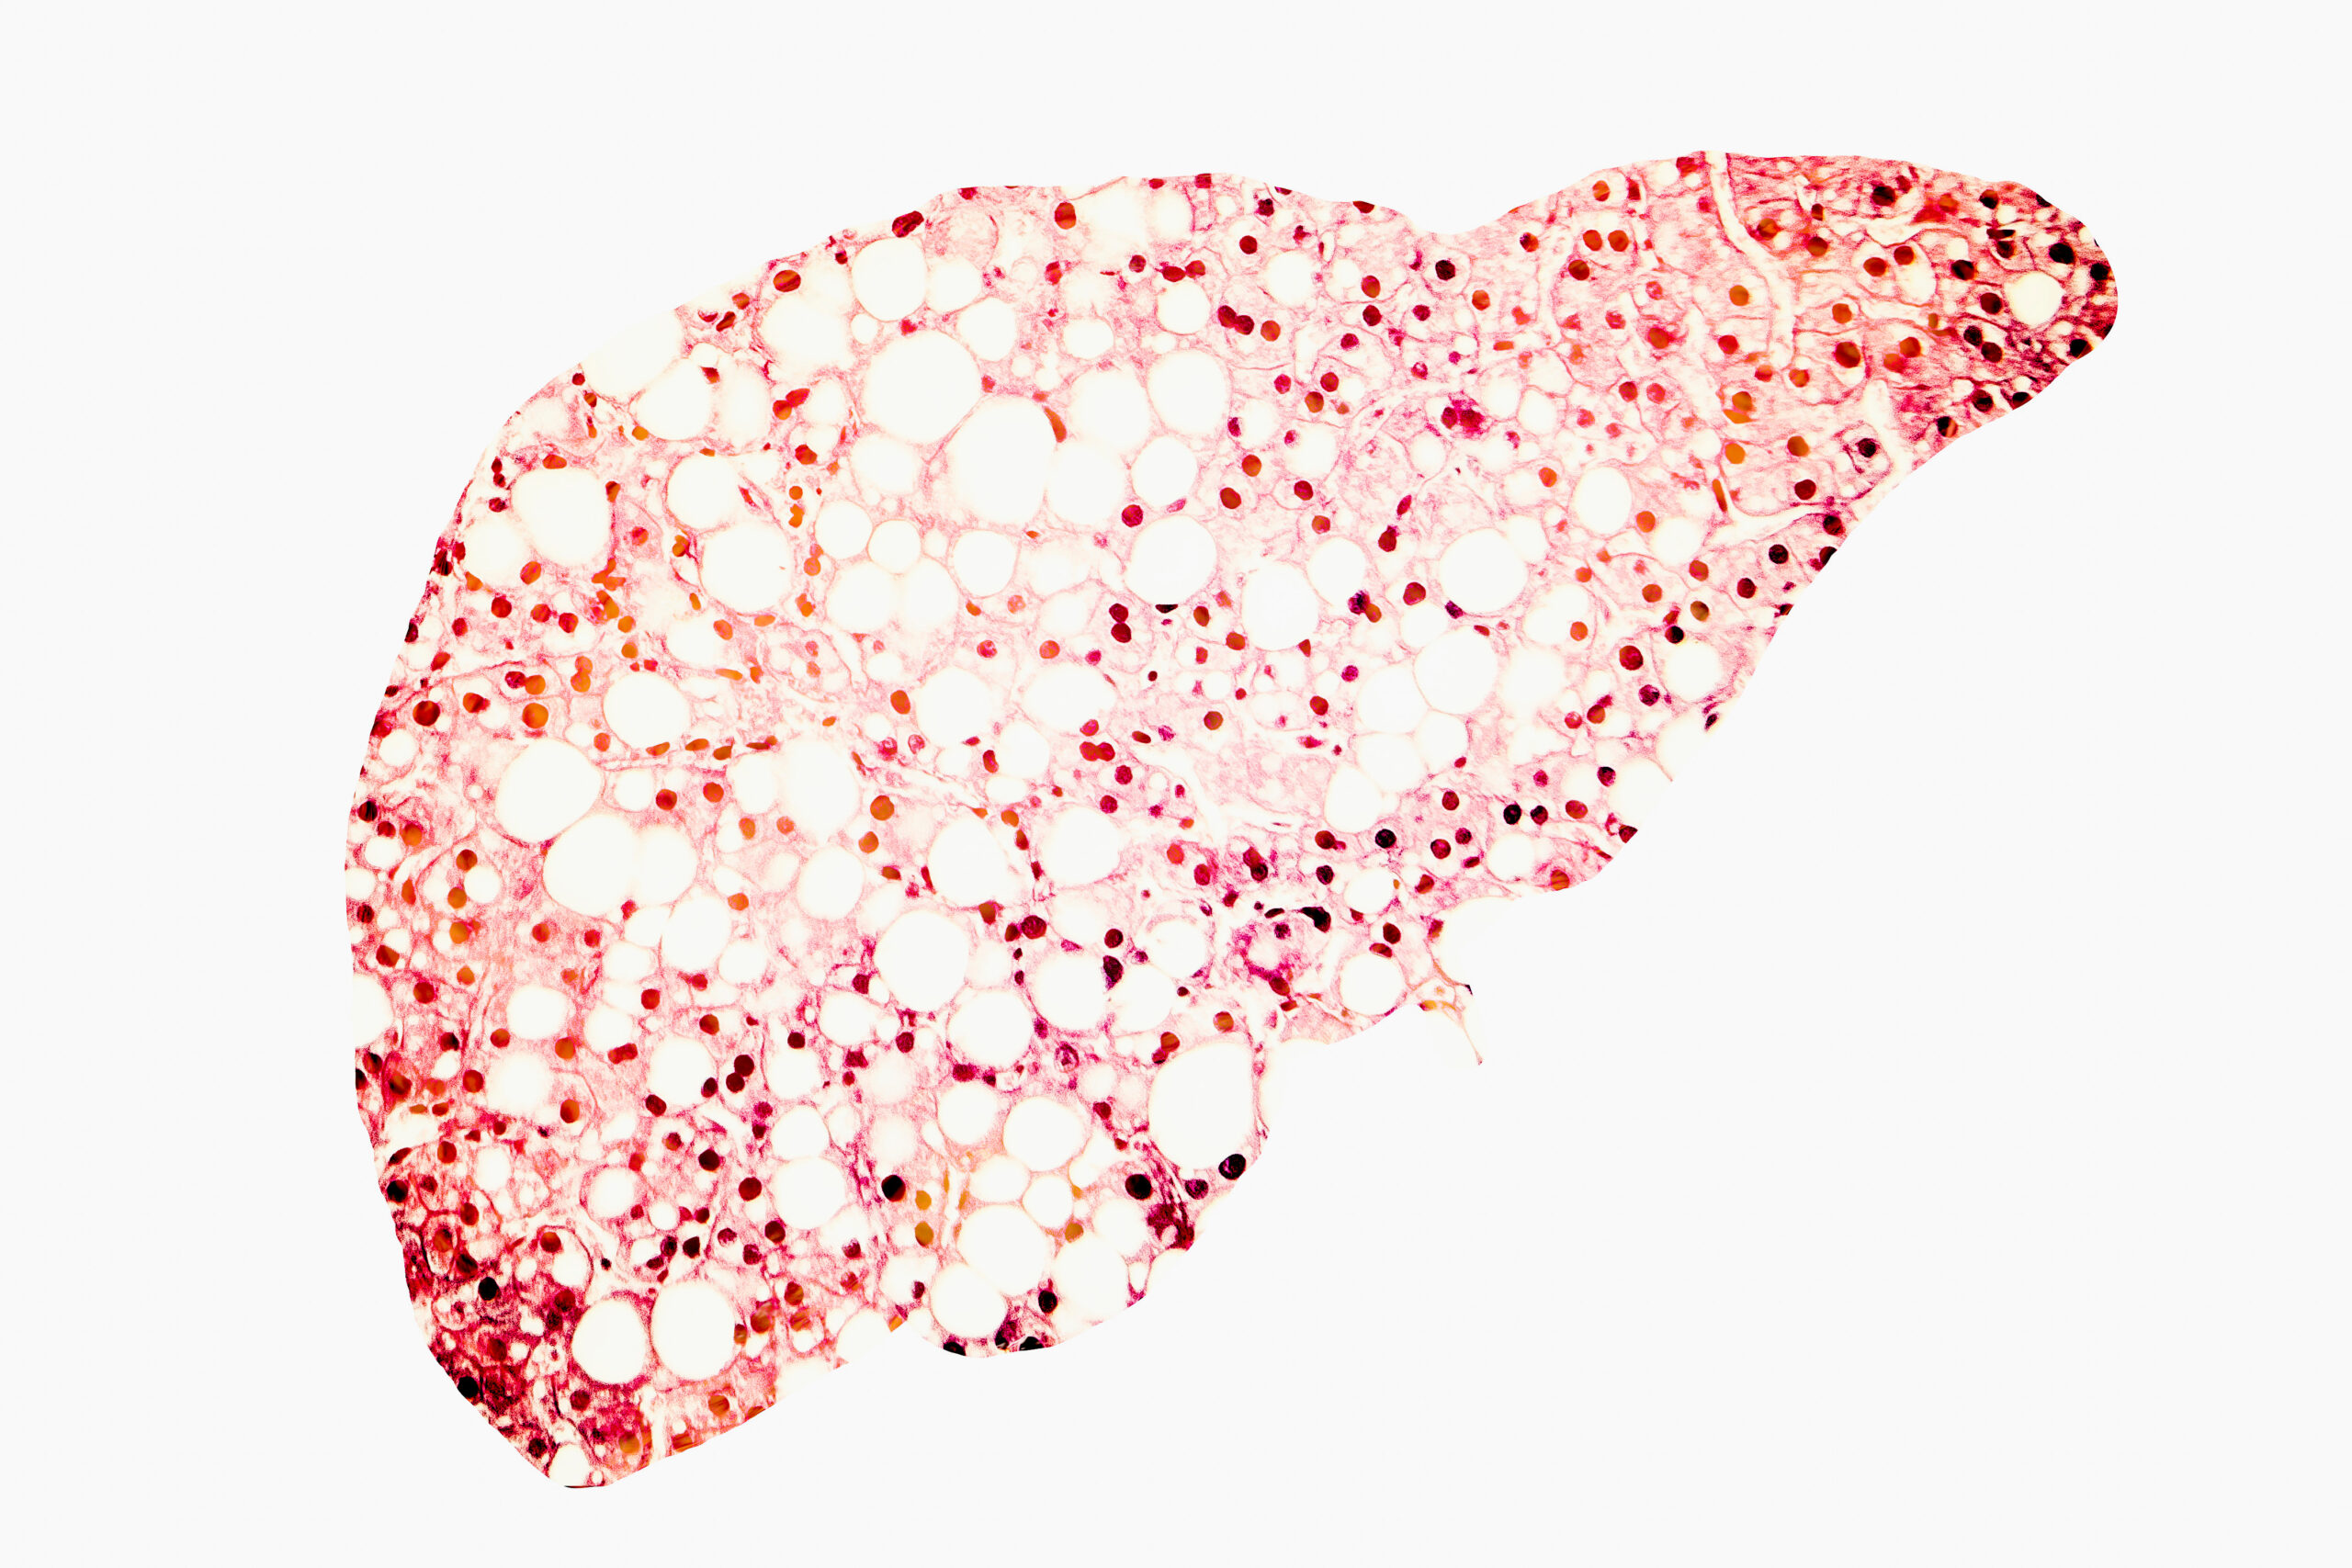 Fatty liver conceptual image